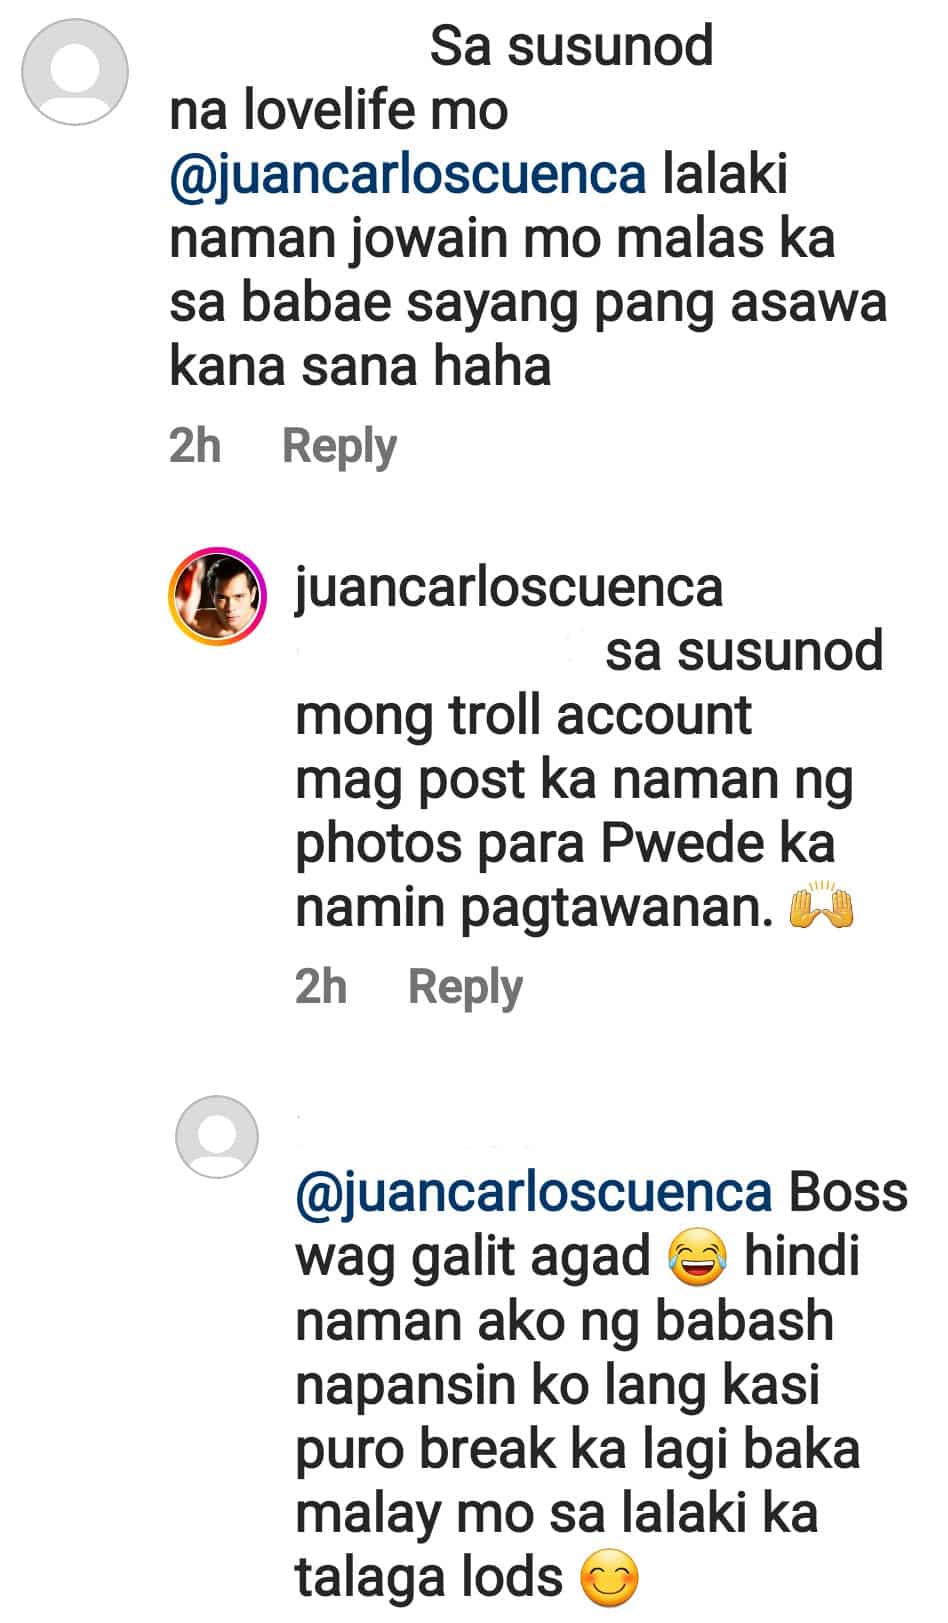 Jake Cuenca, rumesbak sa "lalaki naman jowain mo" comment ng basher: "Troll account"